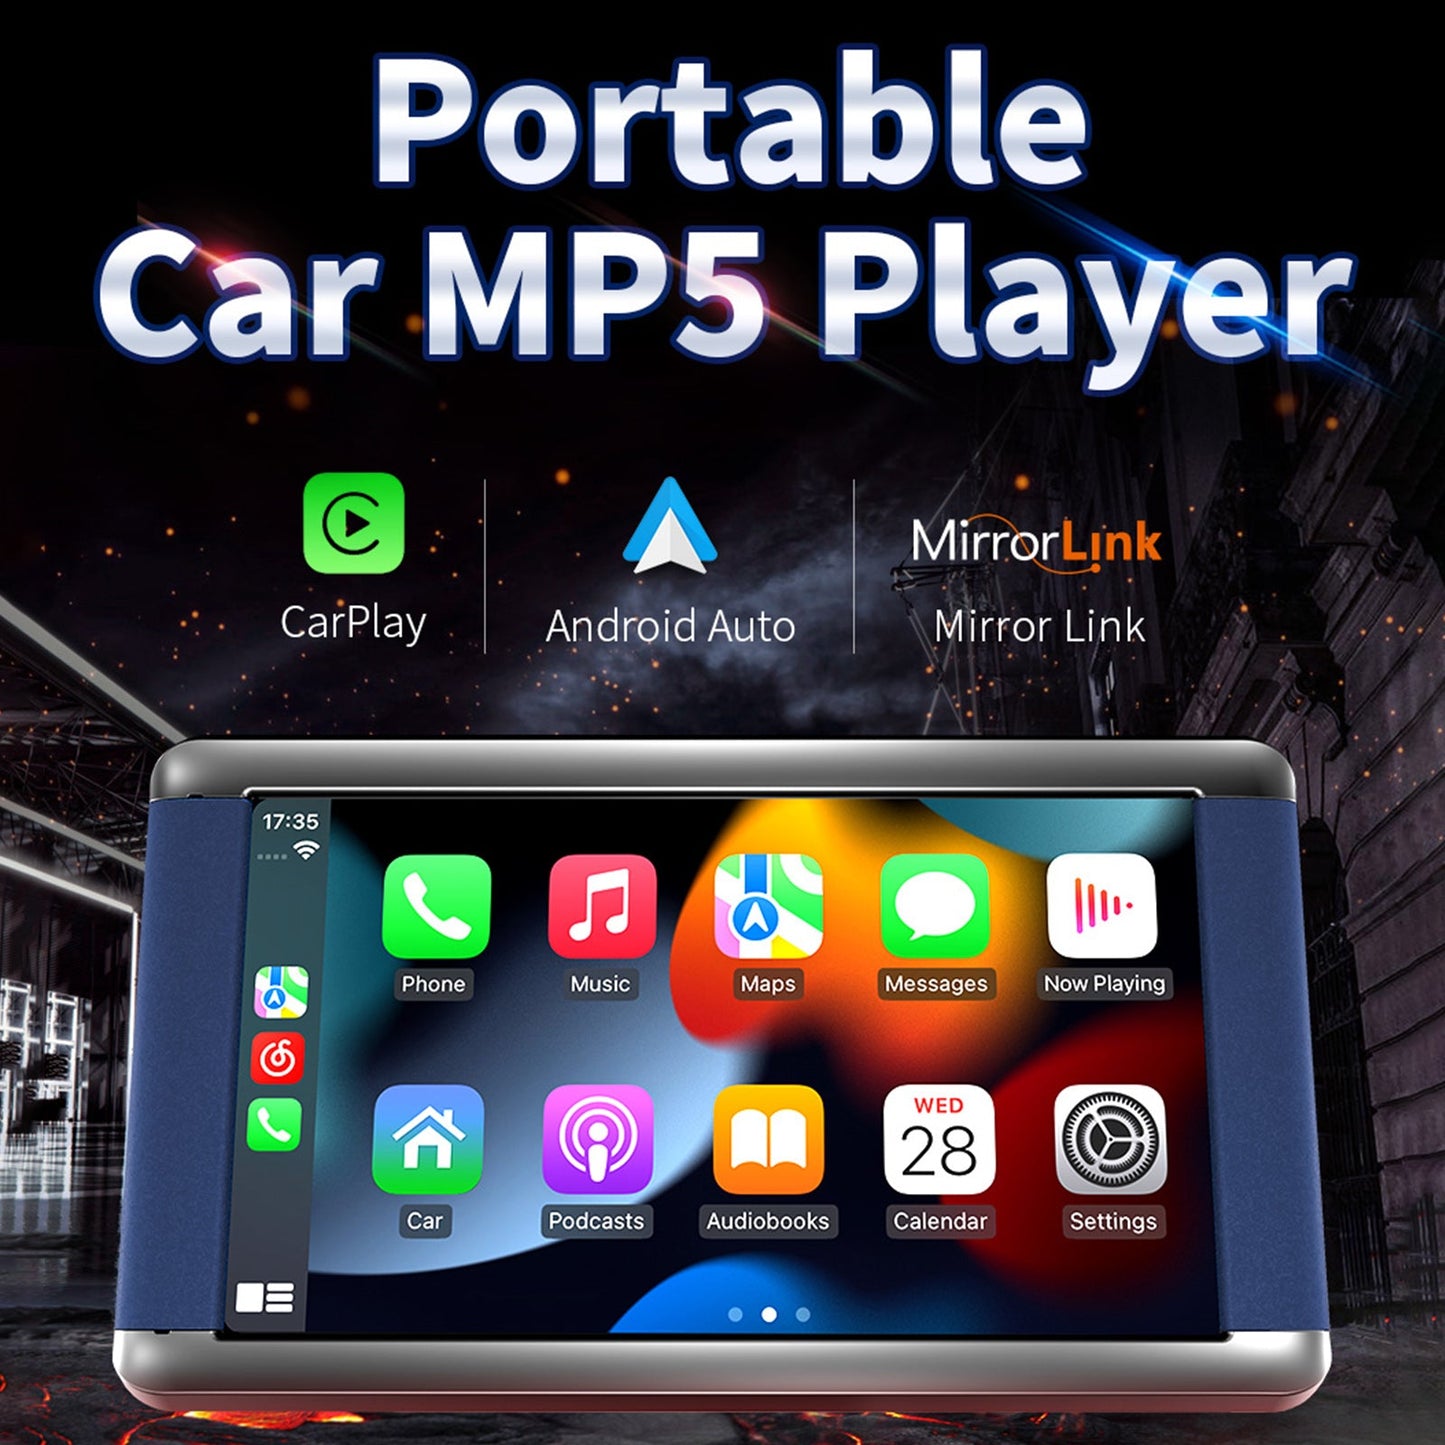 Lettore MP5 per auto portatile da 7" Monitor Bluetooth Carplay wireless + fotocamera a 4 LED